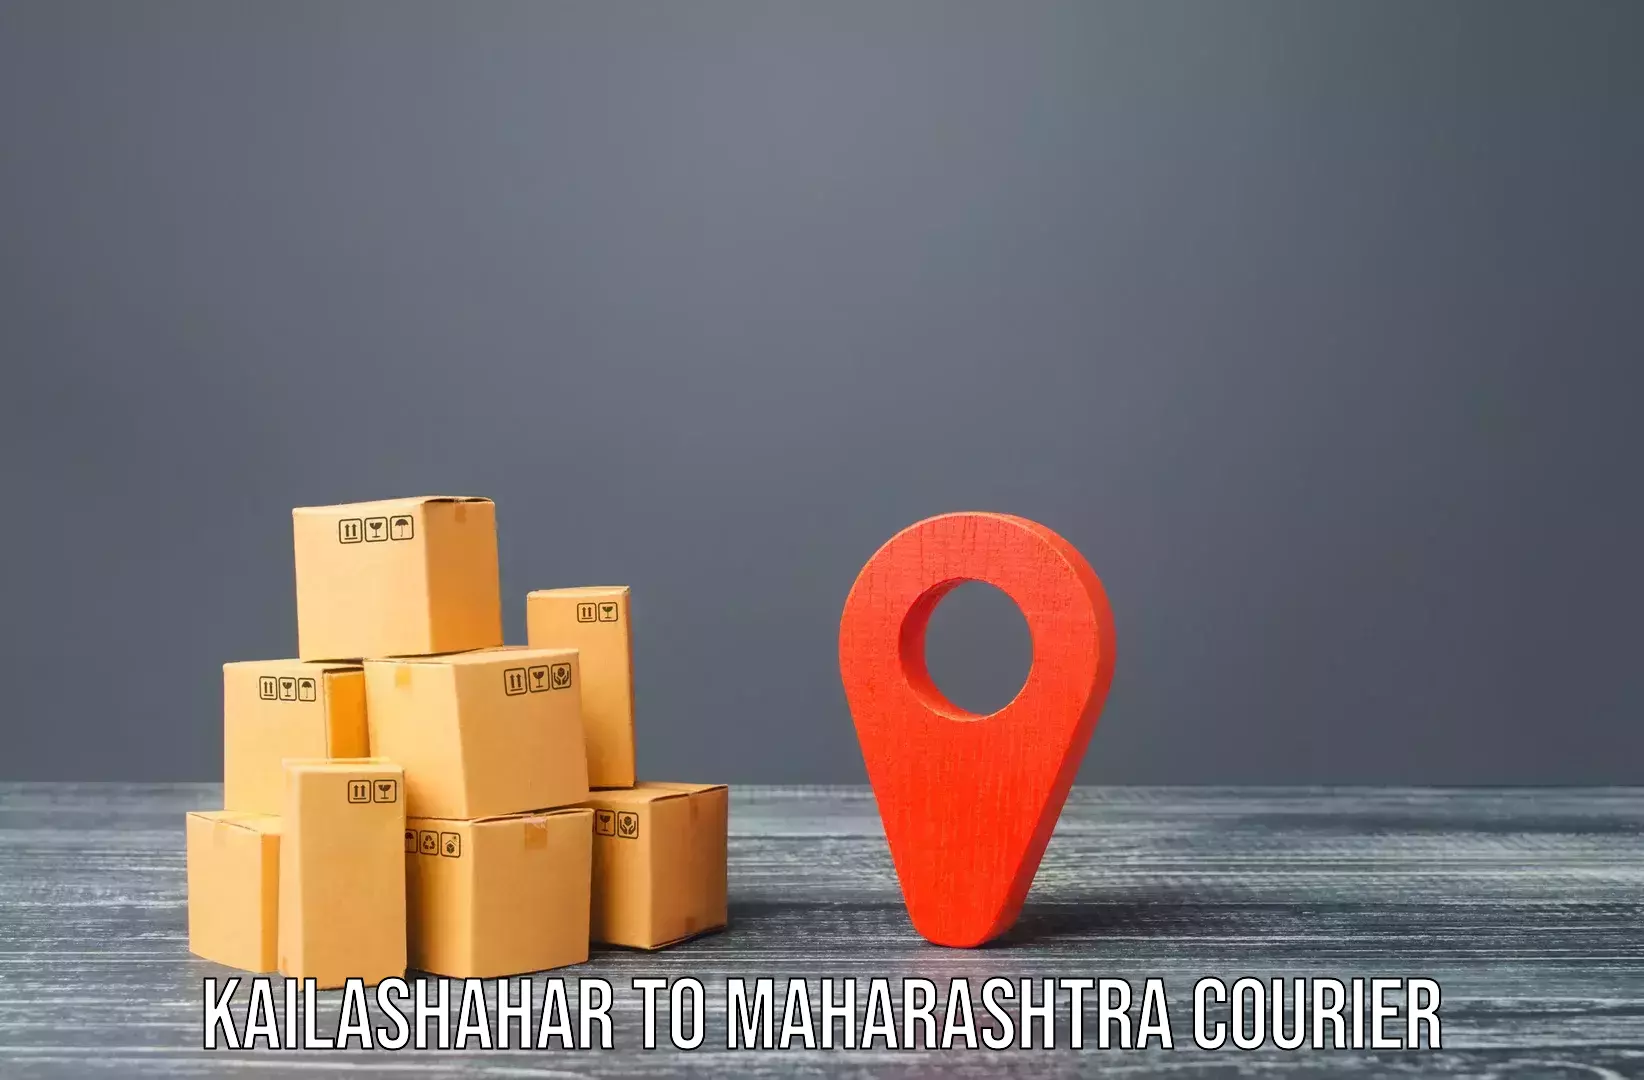 Professional relocation services Kailashahar to Shahada